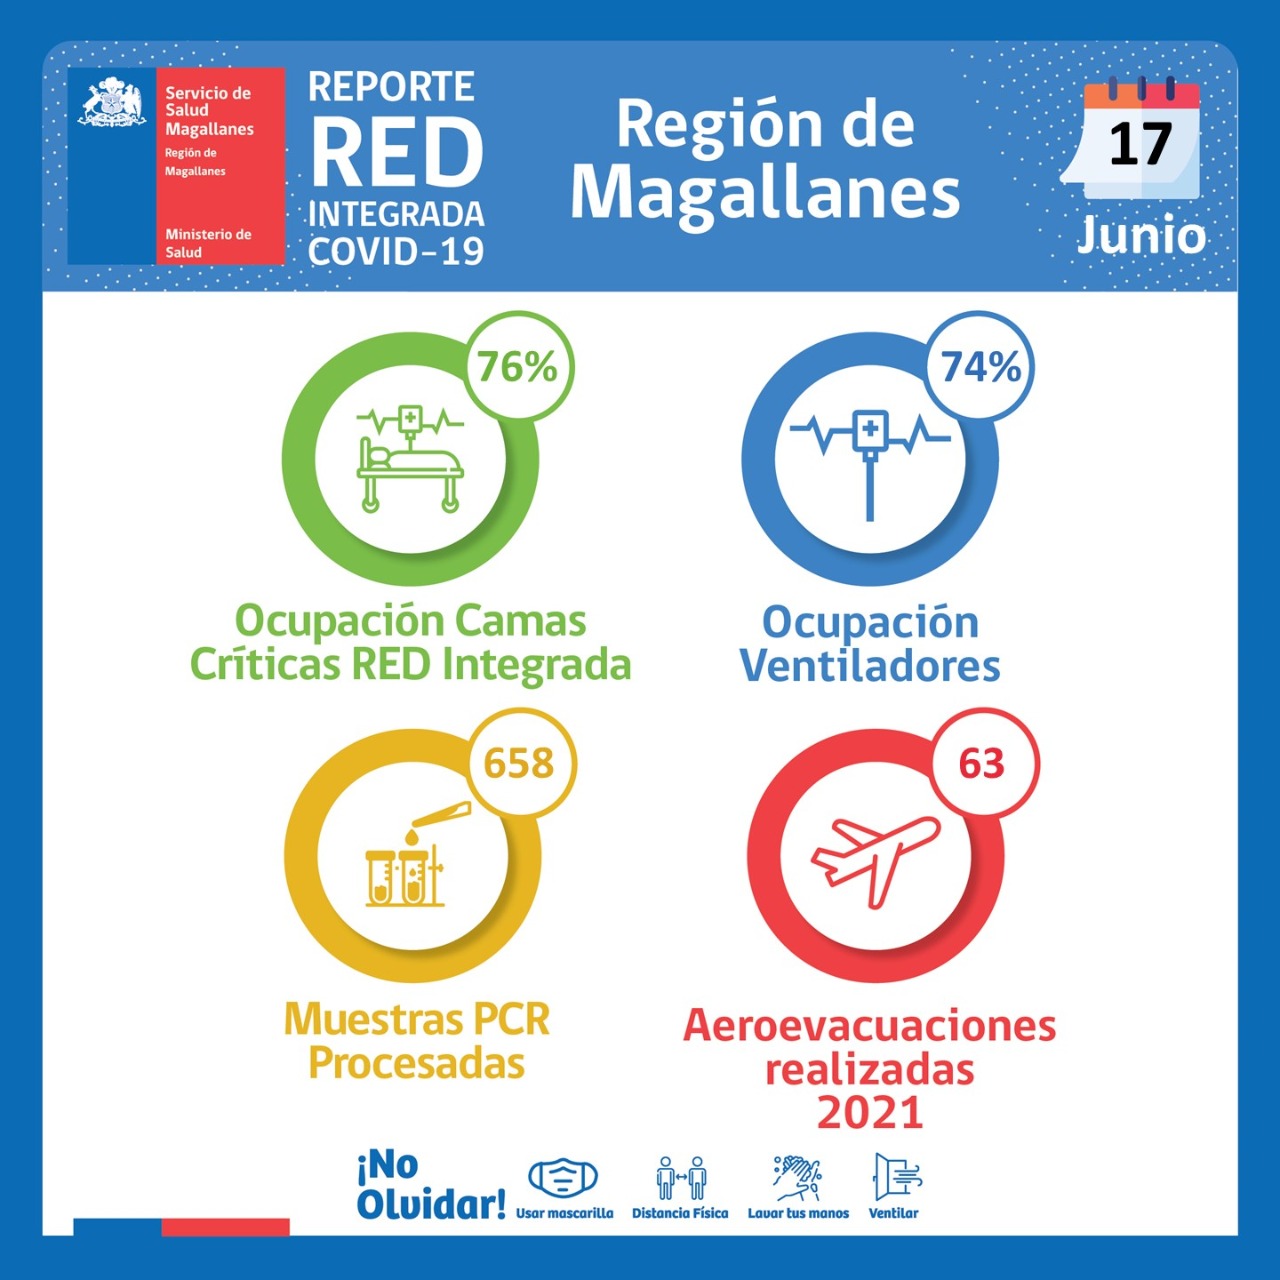 Estado de la Red Integrada Covid19 en Magallanes, al jueves 17 de junio